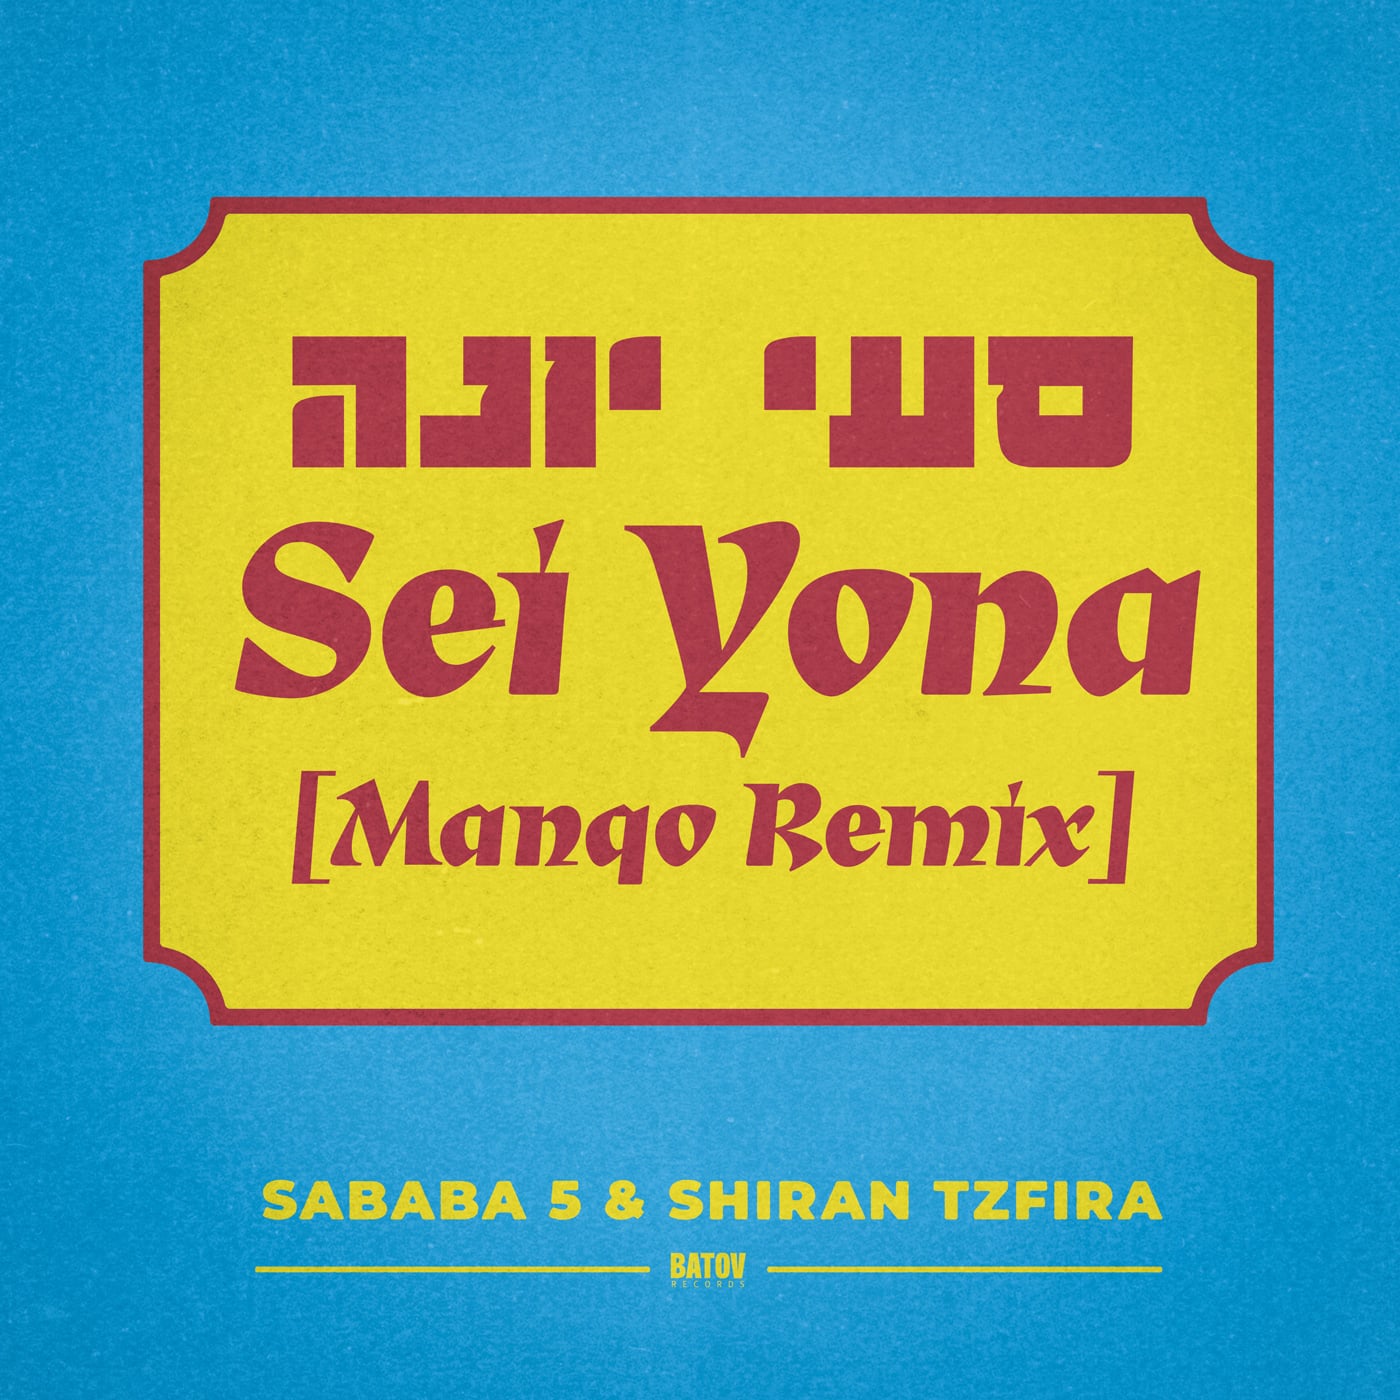 Sababa 5 & Shiran Tzfira - Sei Yona (Manqo Remix)